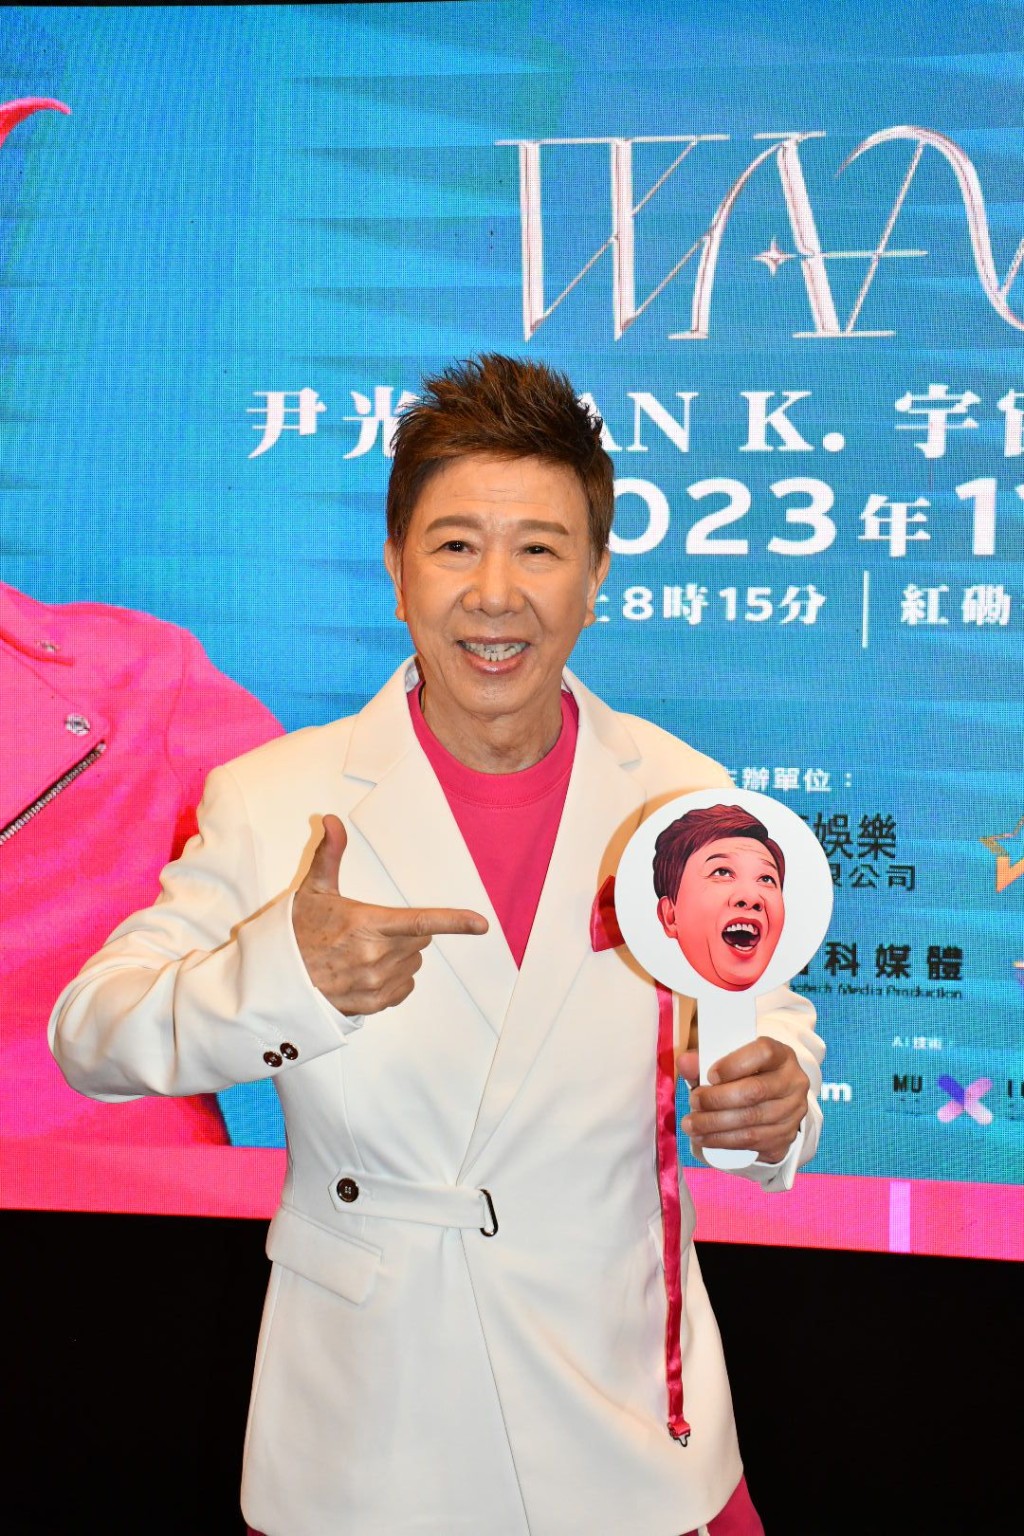 尹光成為首位香港歌手註冊AI聲音的藝人。